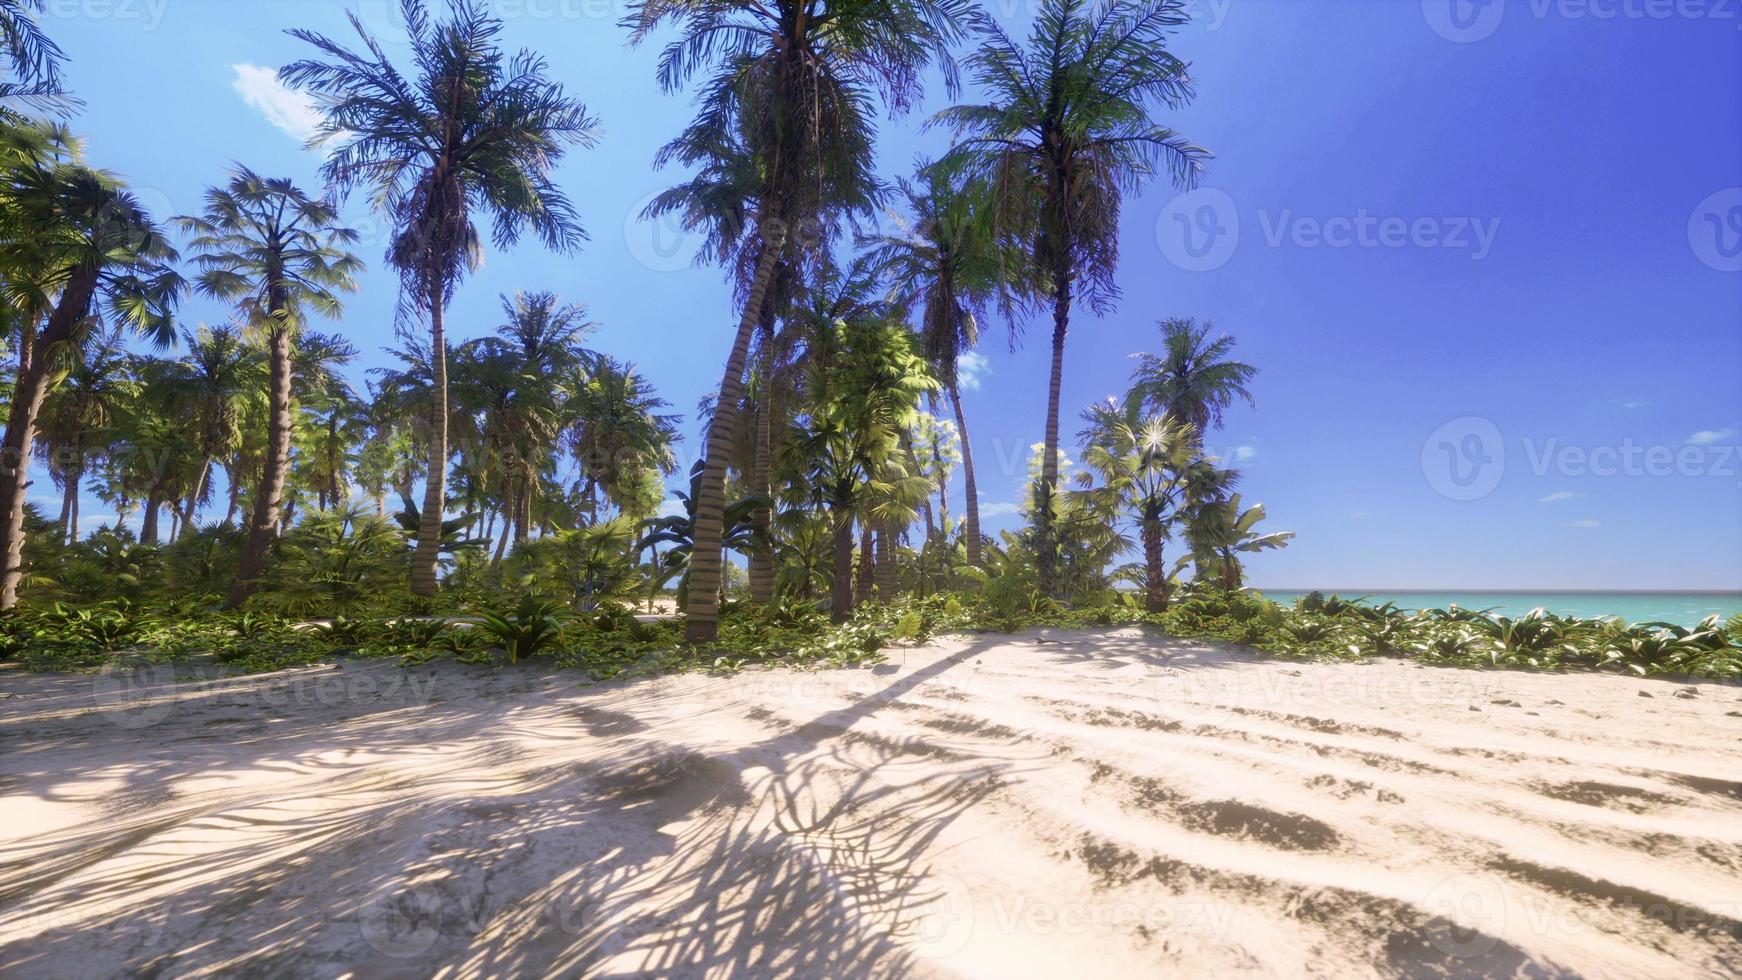 parque de playa sur de miami con palmeras foto